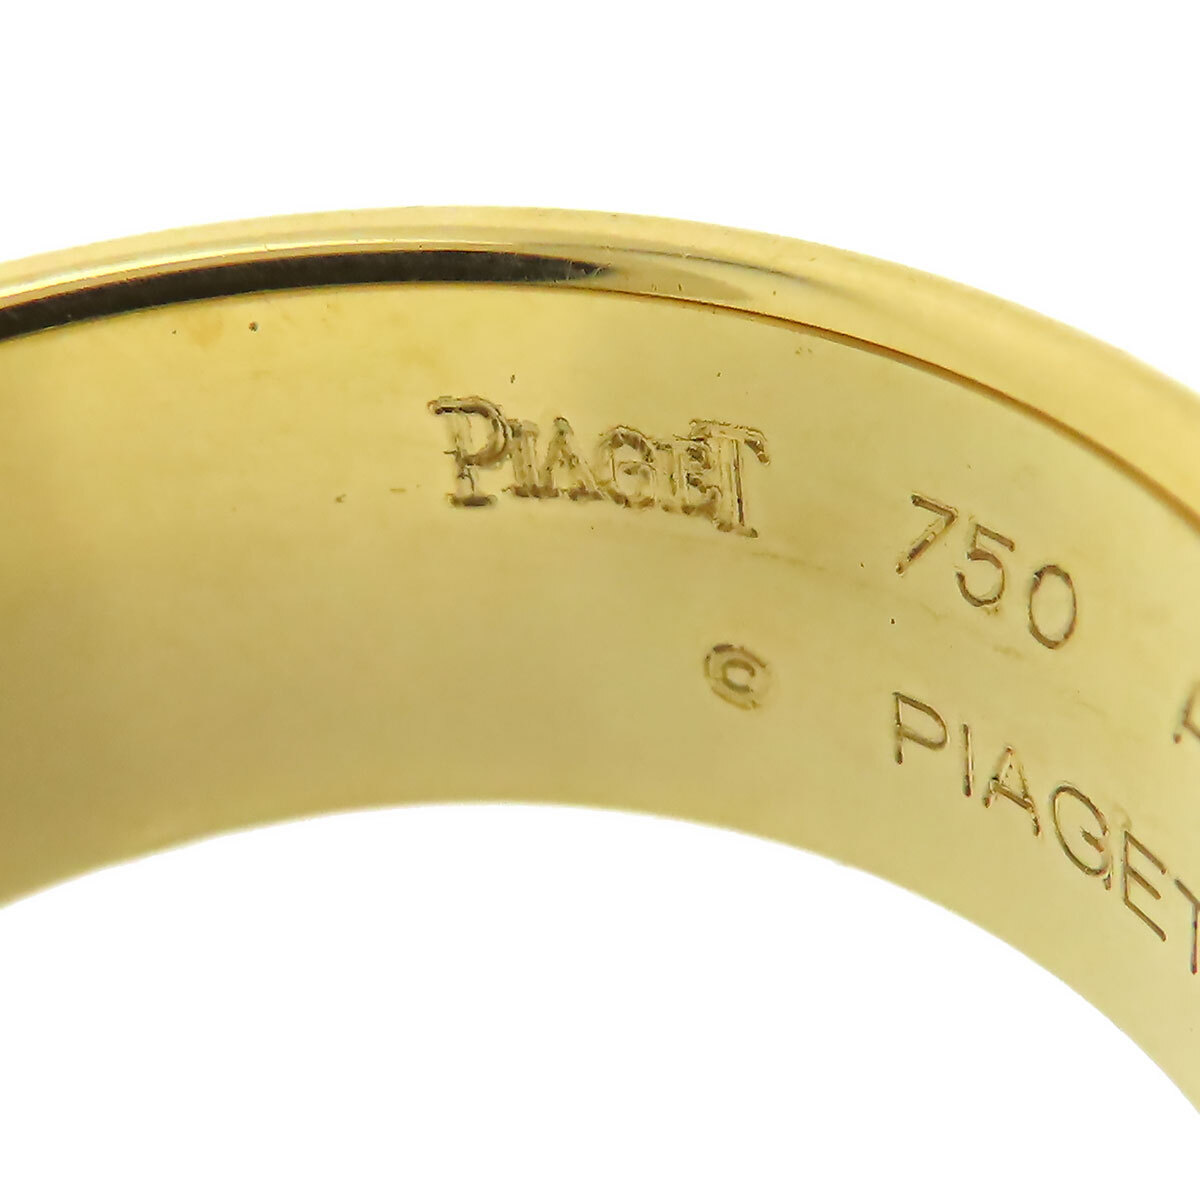  Piaget poseshon diamond ring #63 750 (K18YG) men's PIAGET used [ jewelry ]